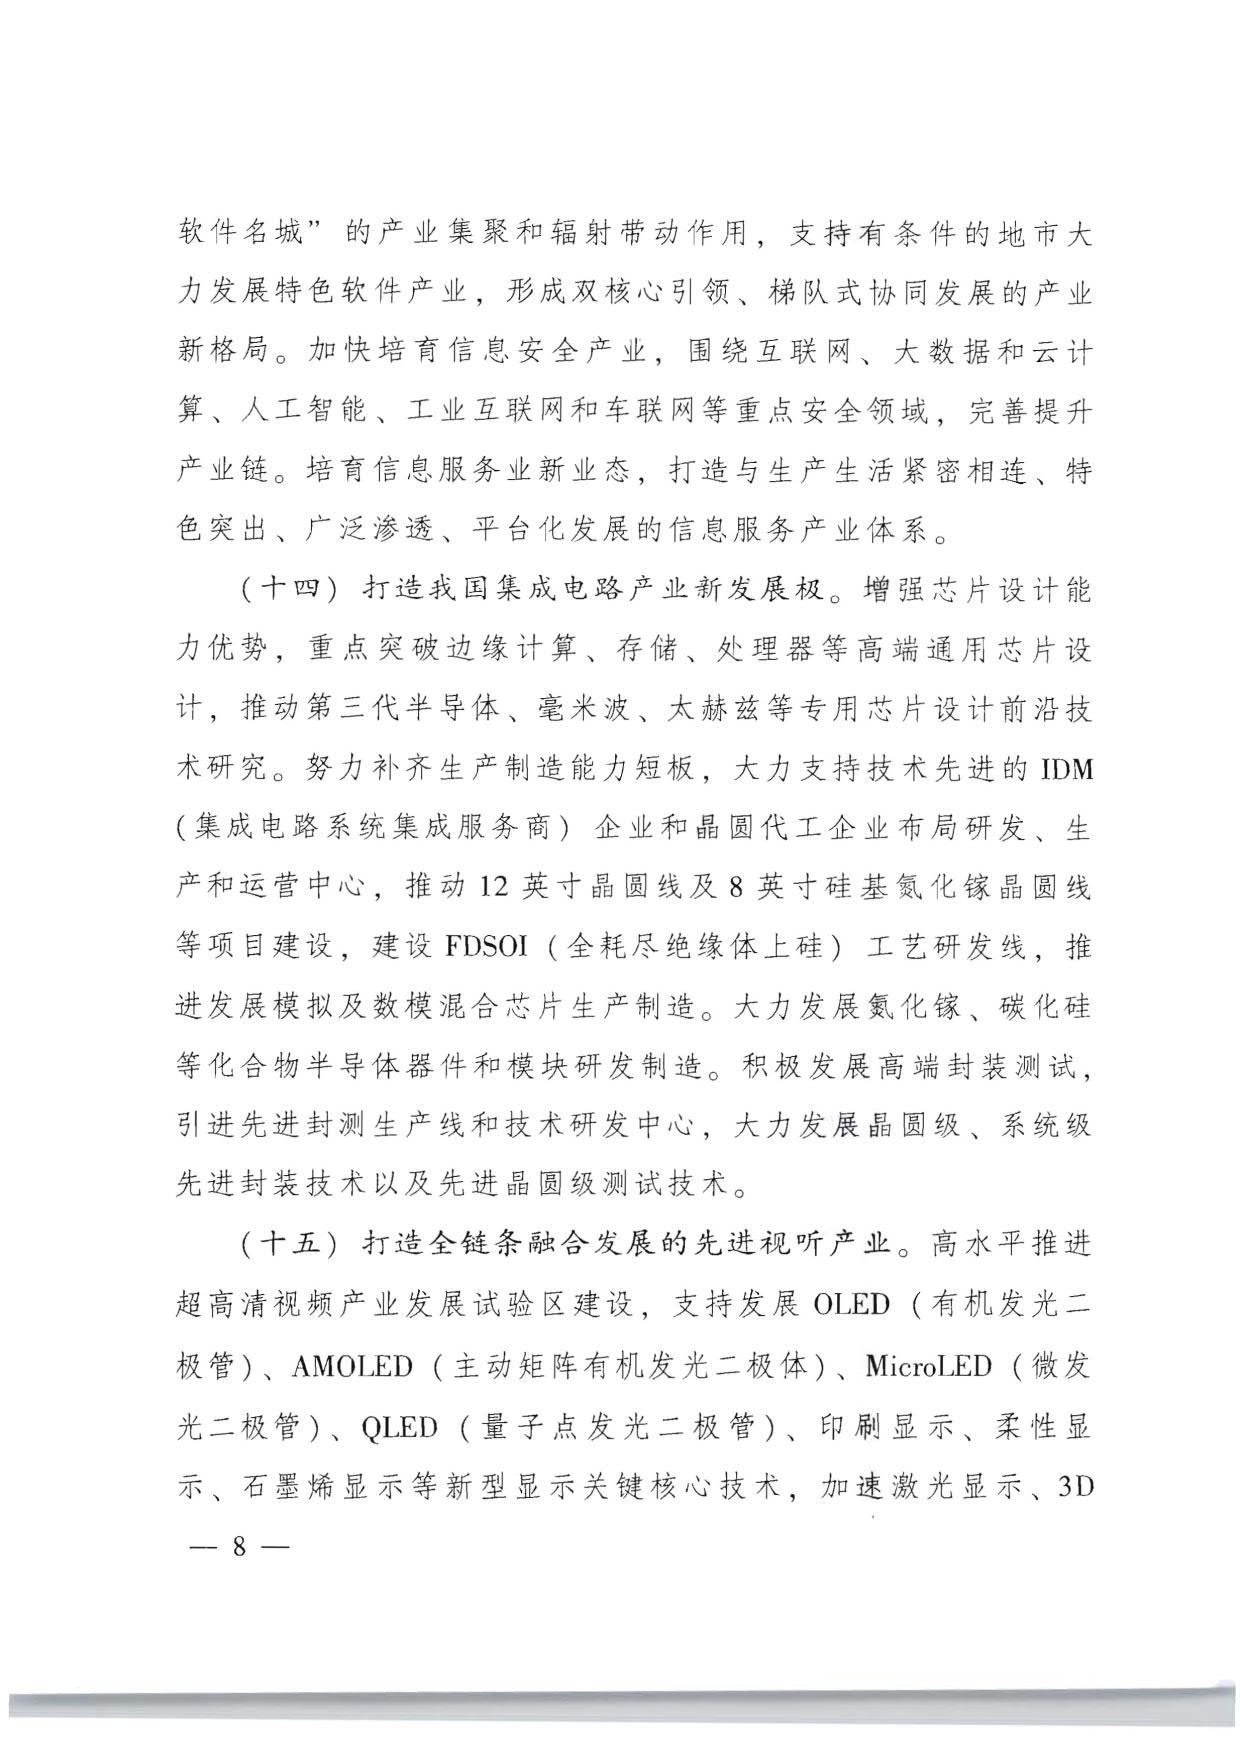 广东省人民政府关于加快数字化发展的意见_08.jpg